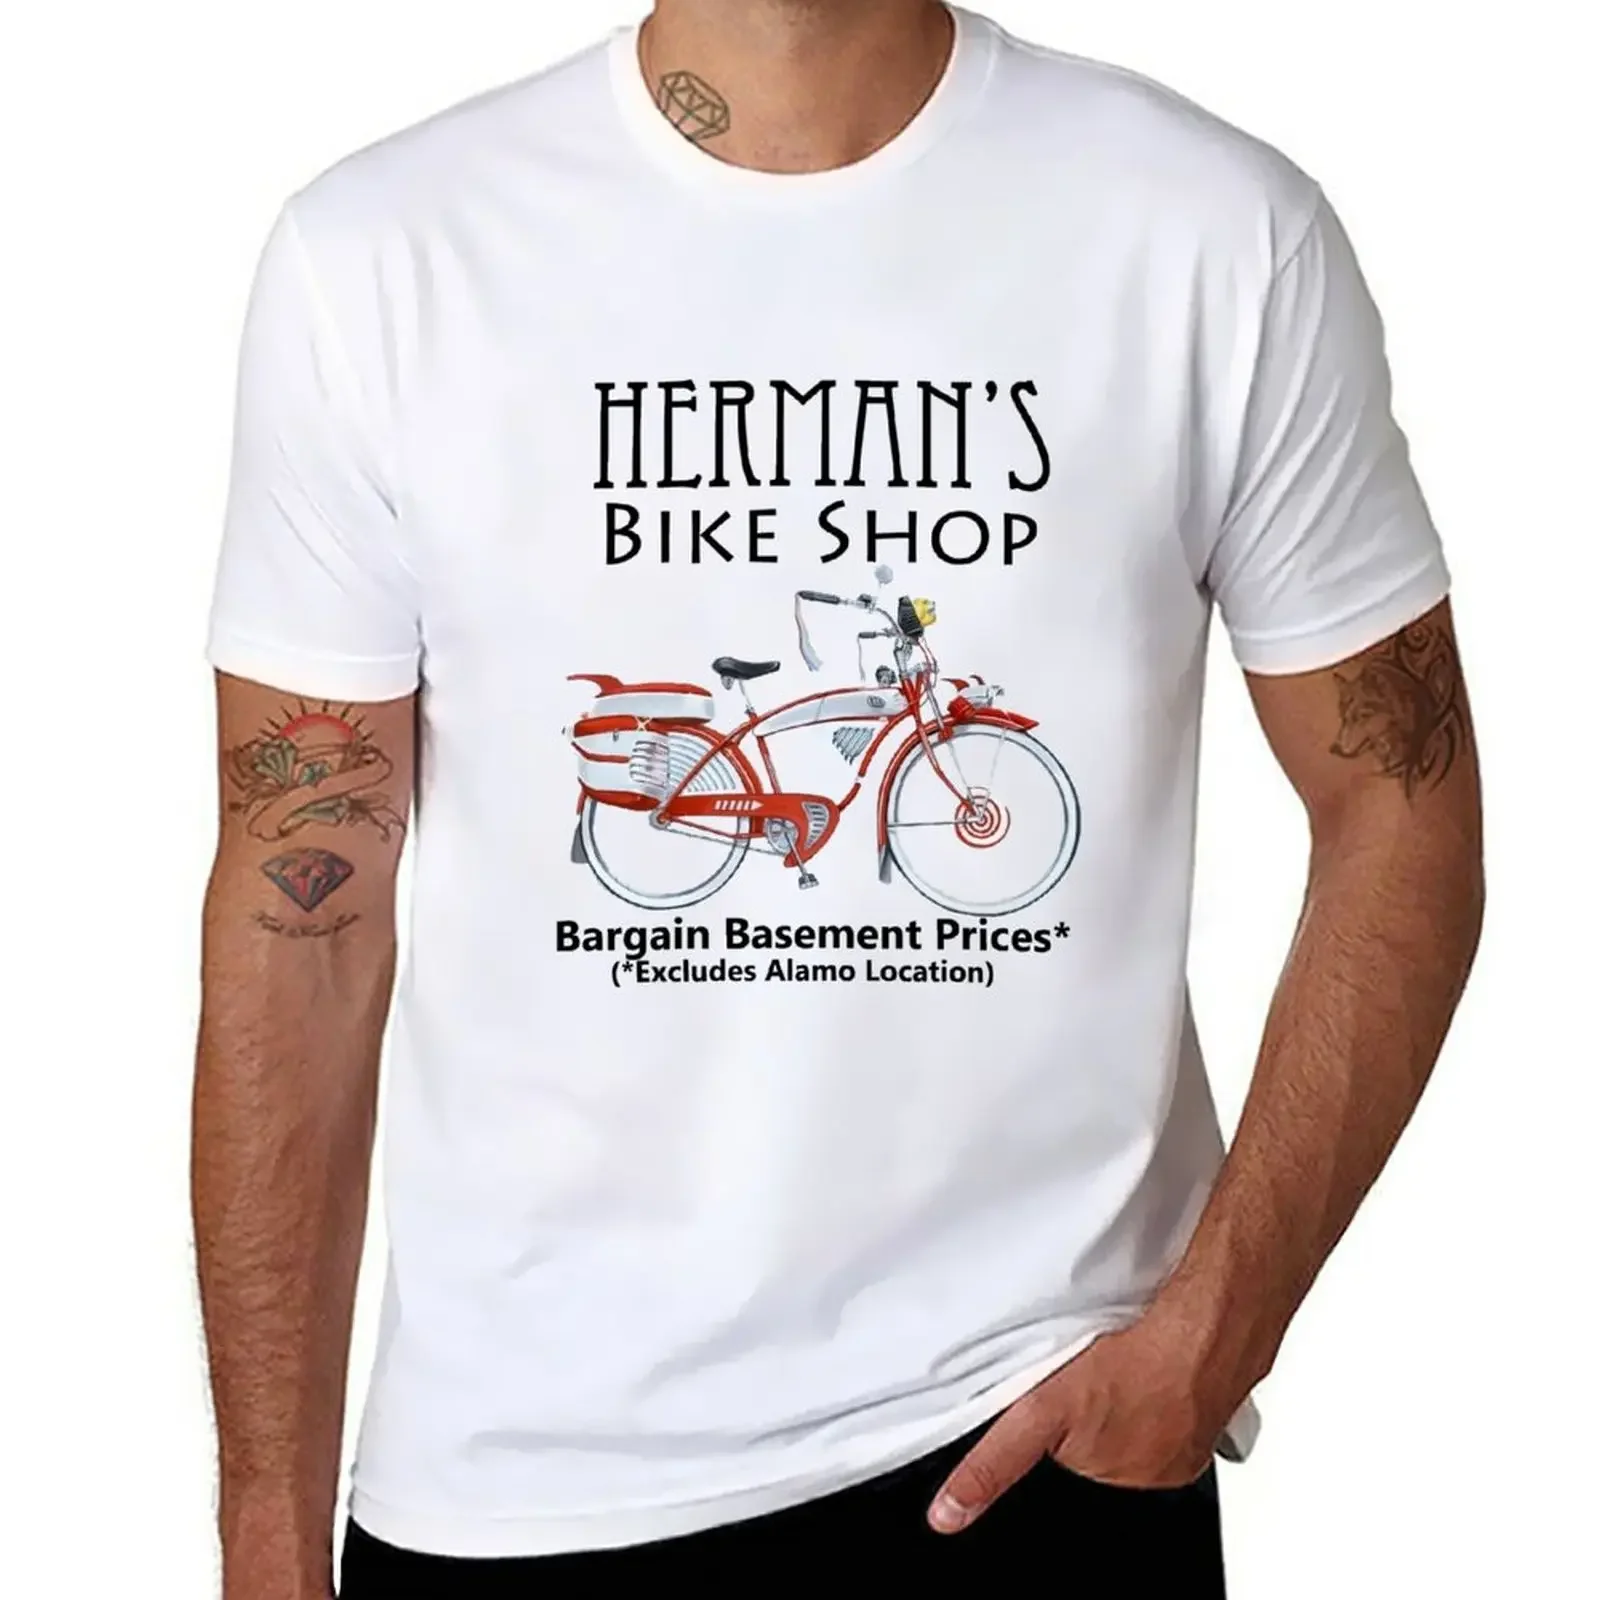 

Футболка Herman's Bike Shop, корейская модная блузка, мужские хлопковые футболки